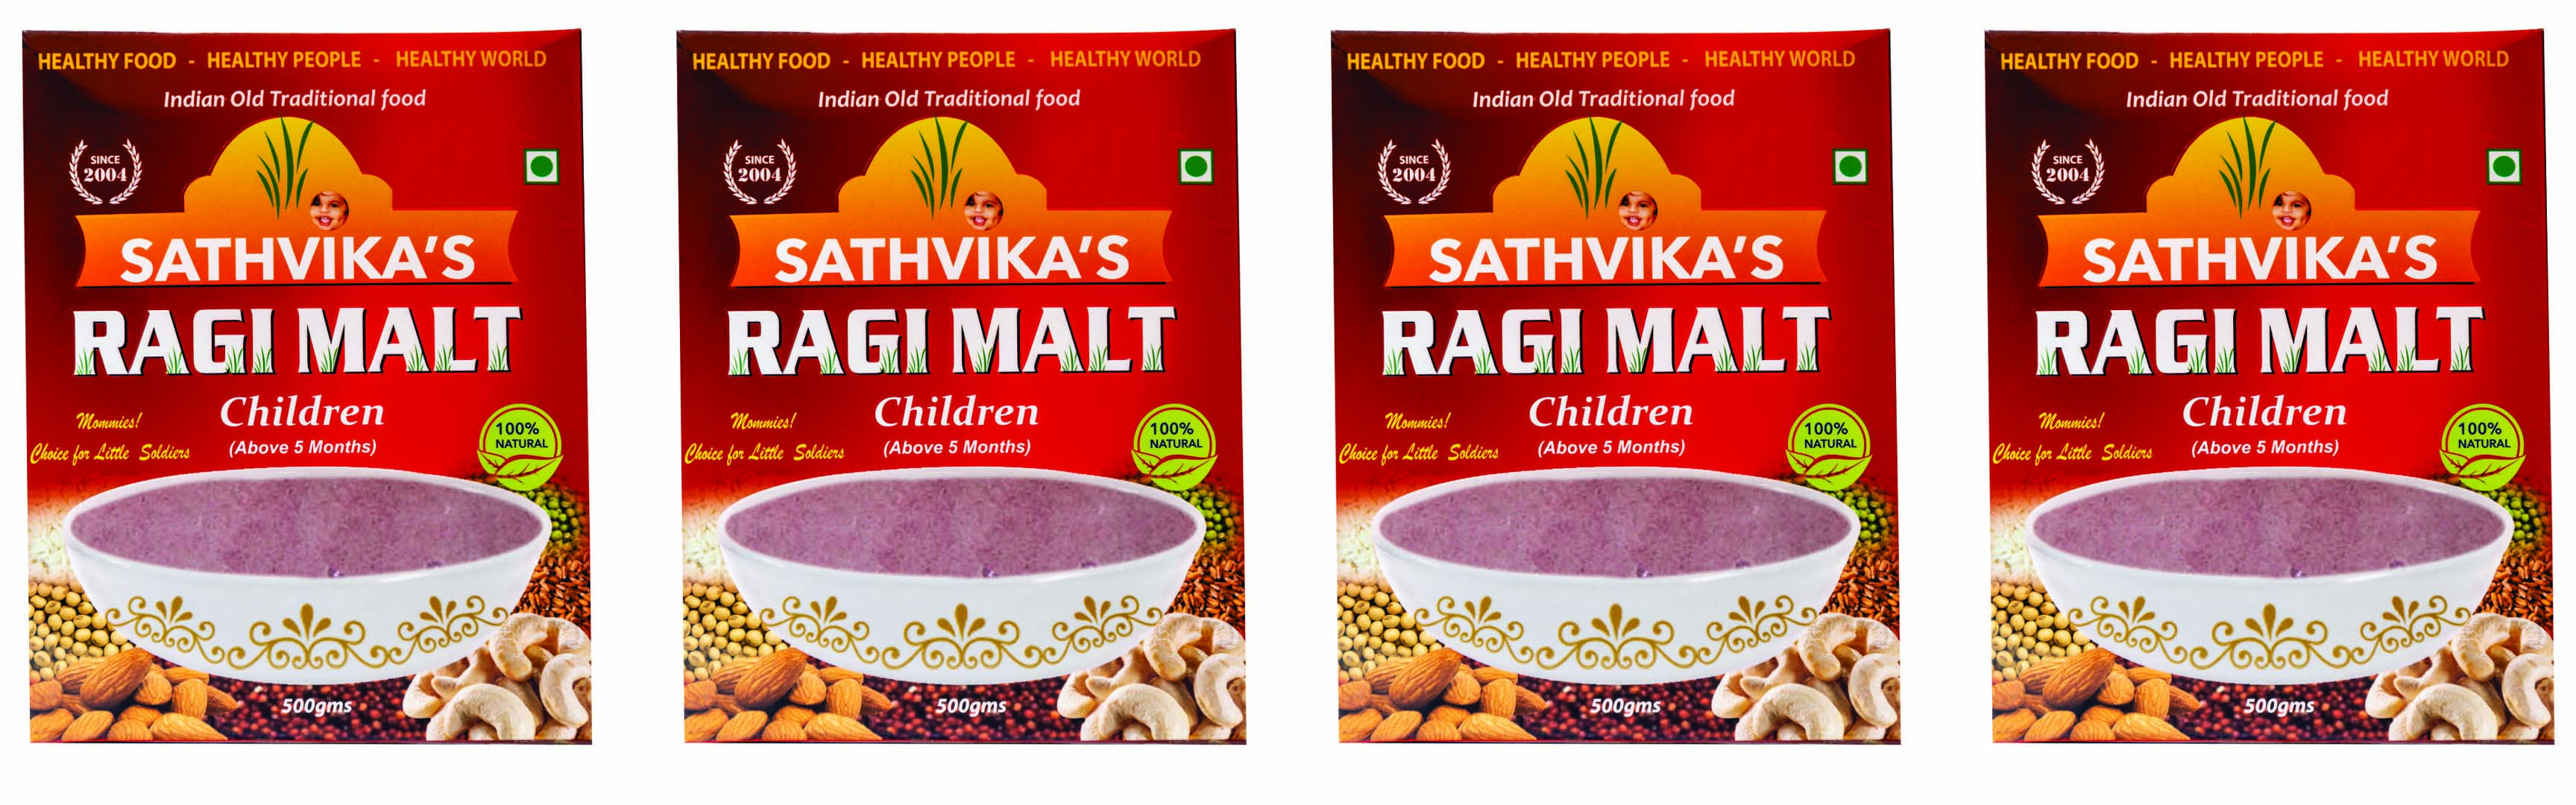 Ragi Malt Children (500 grams) Pack Of 4.